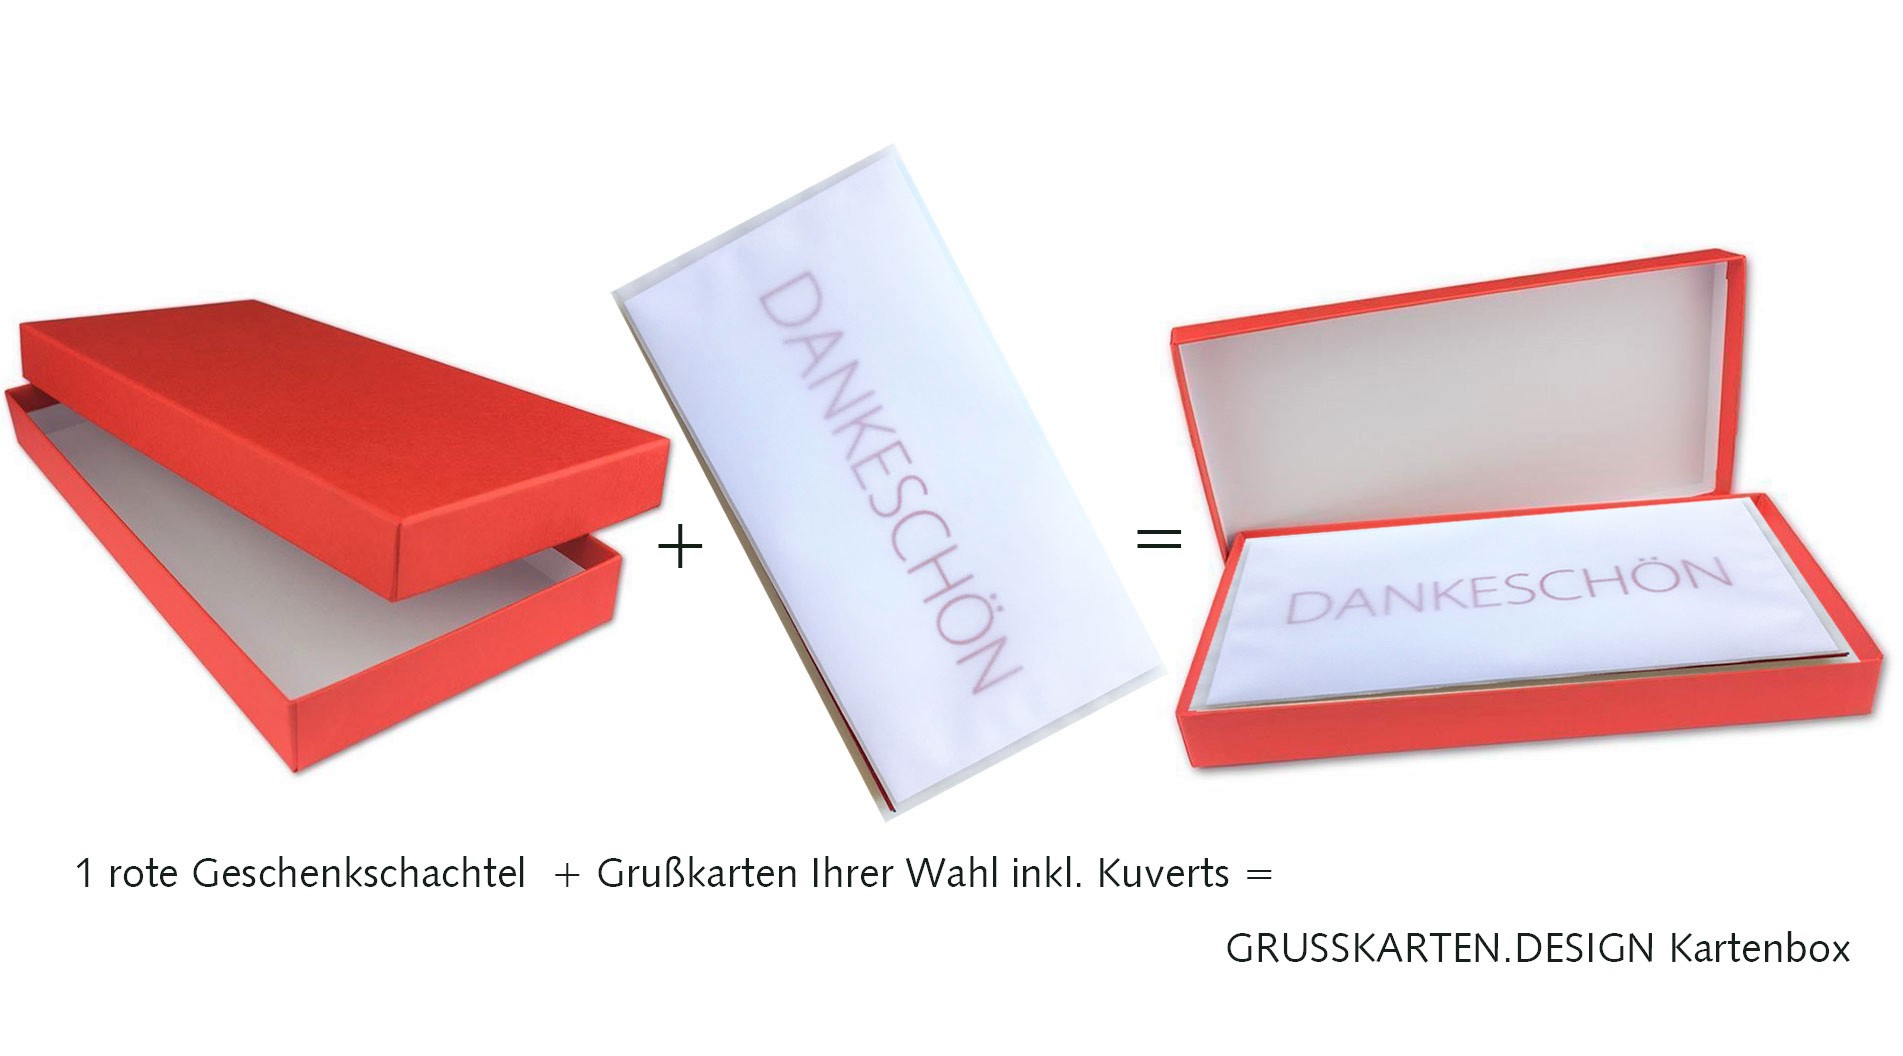 2_Konfigurator_Grusskarten-Design_Kartenbox_Grusskarten-und-Geschenkschachtel8X1KLeFRW7FKu